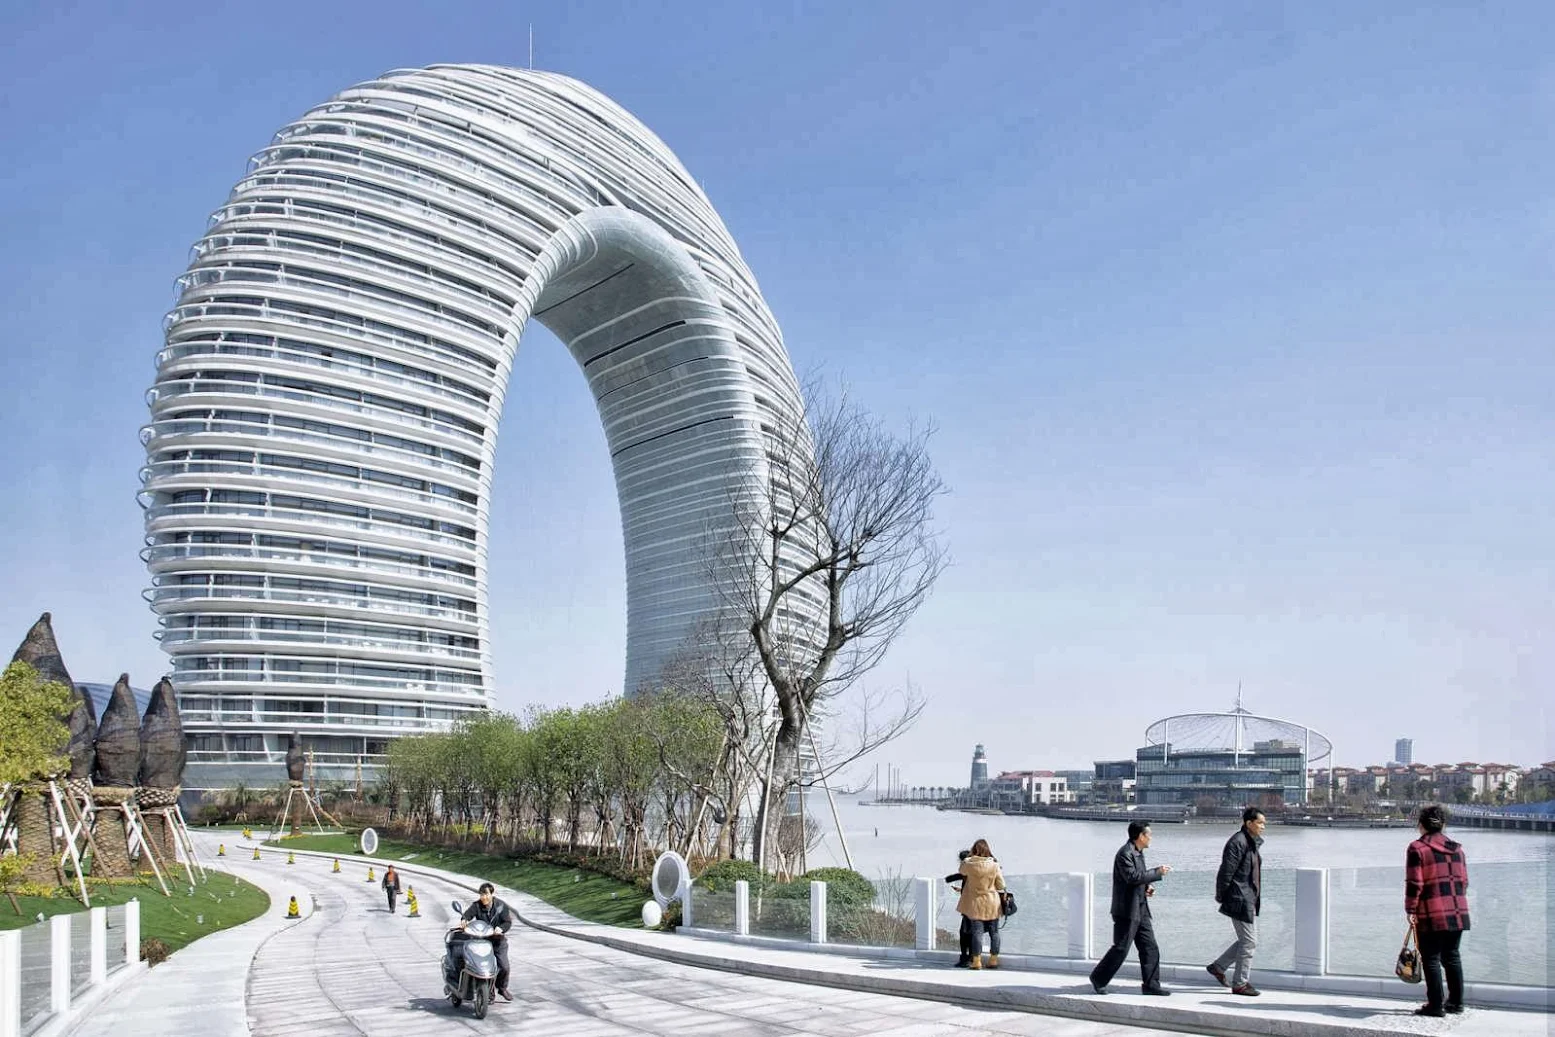 Sheraton Huzhou Hot Spring Resort by MAD Architects